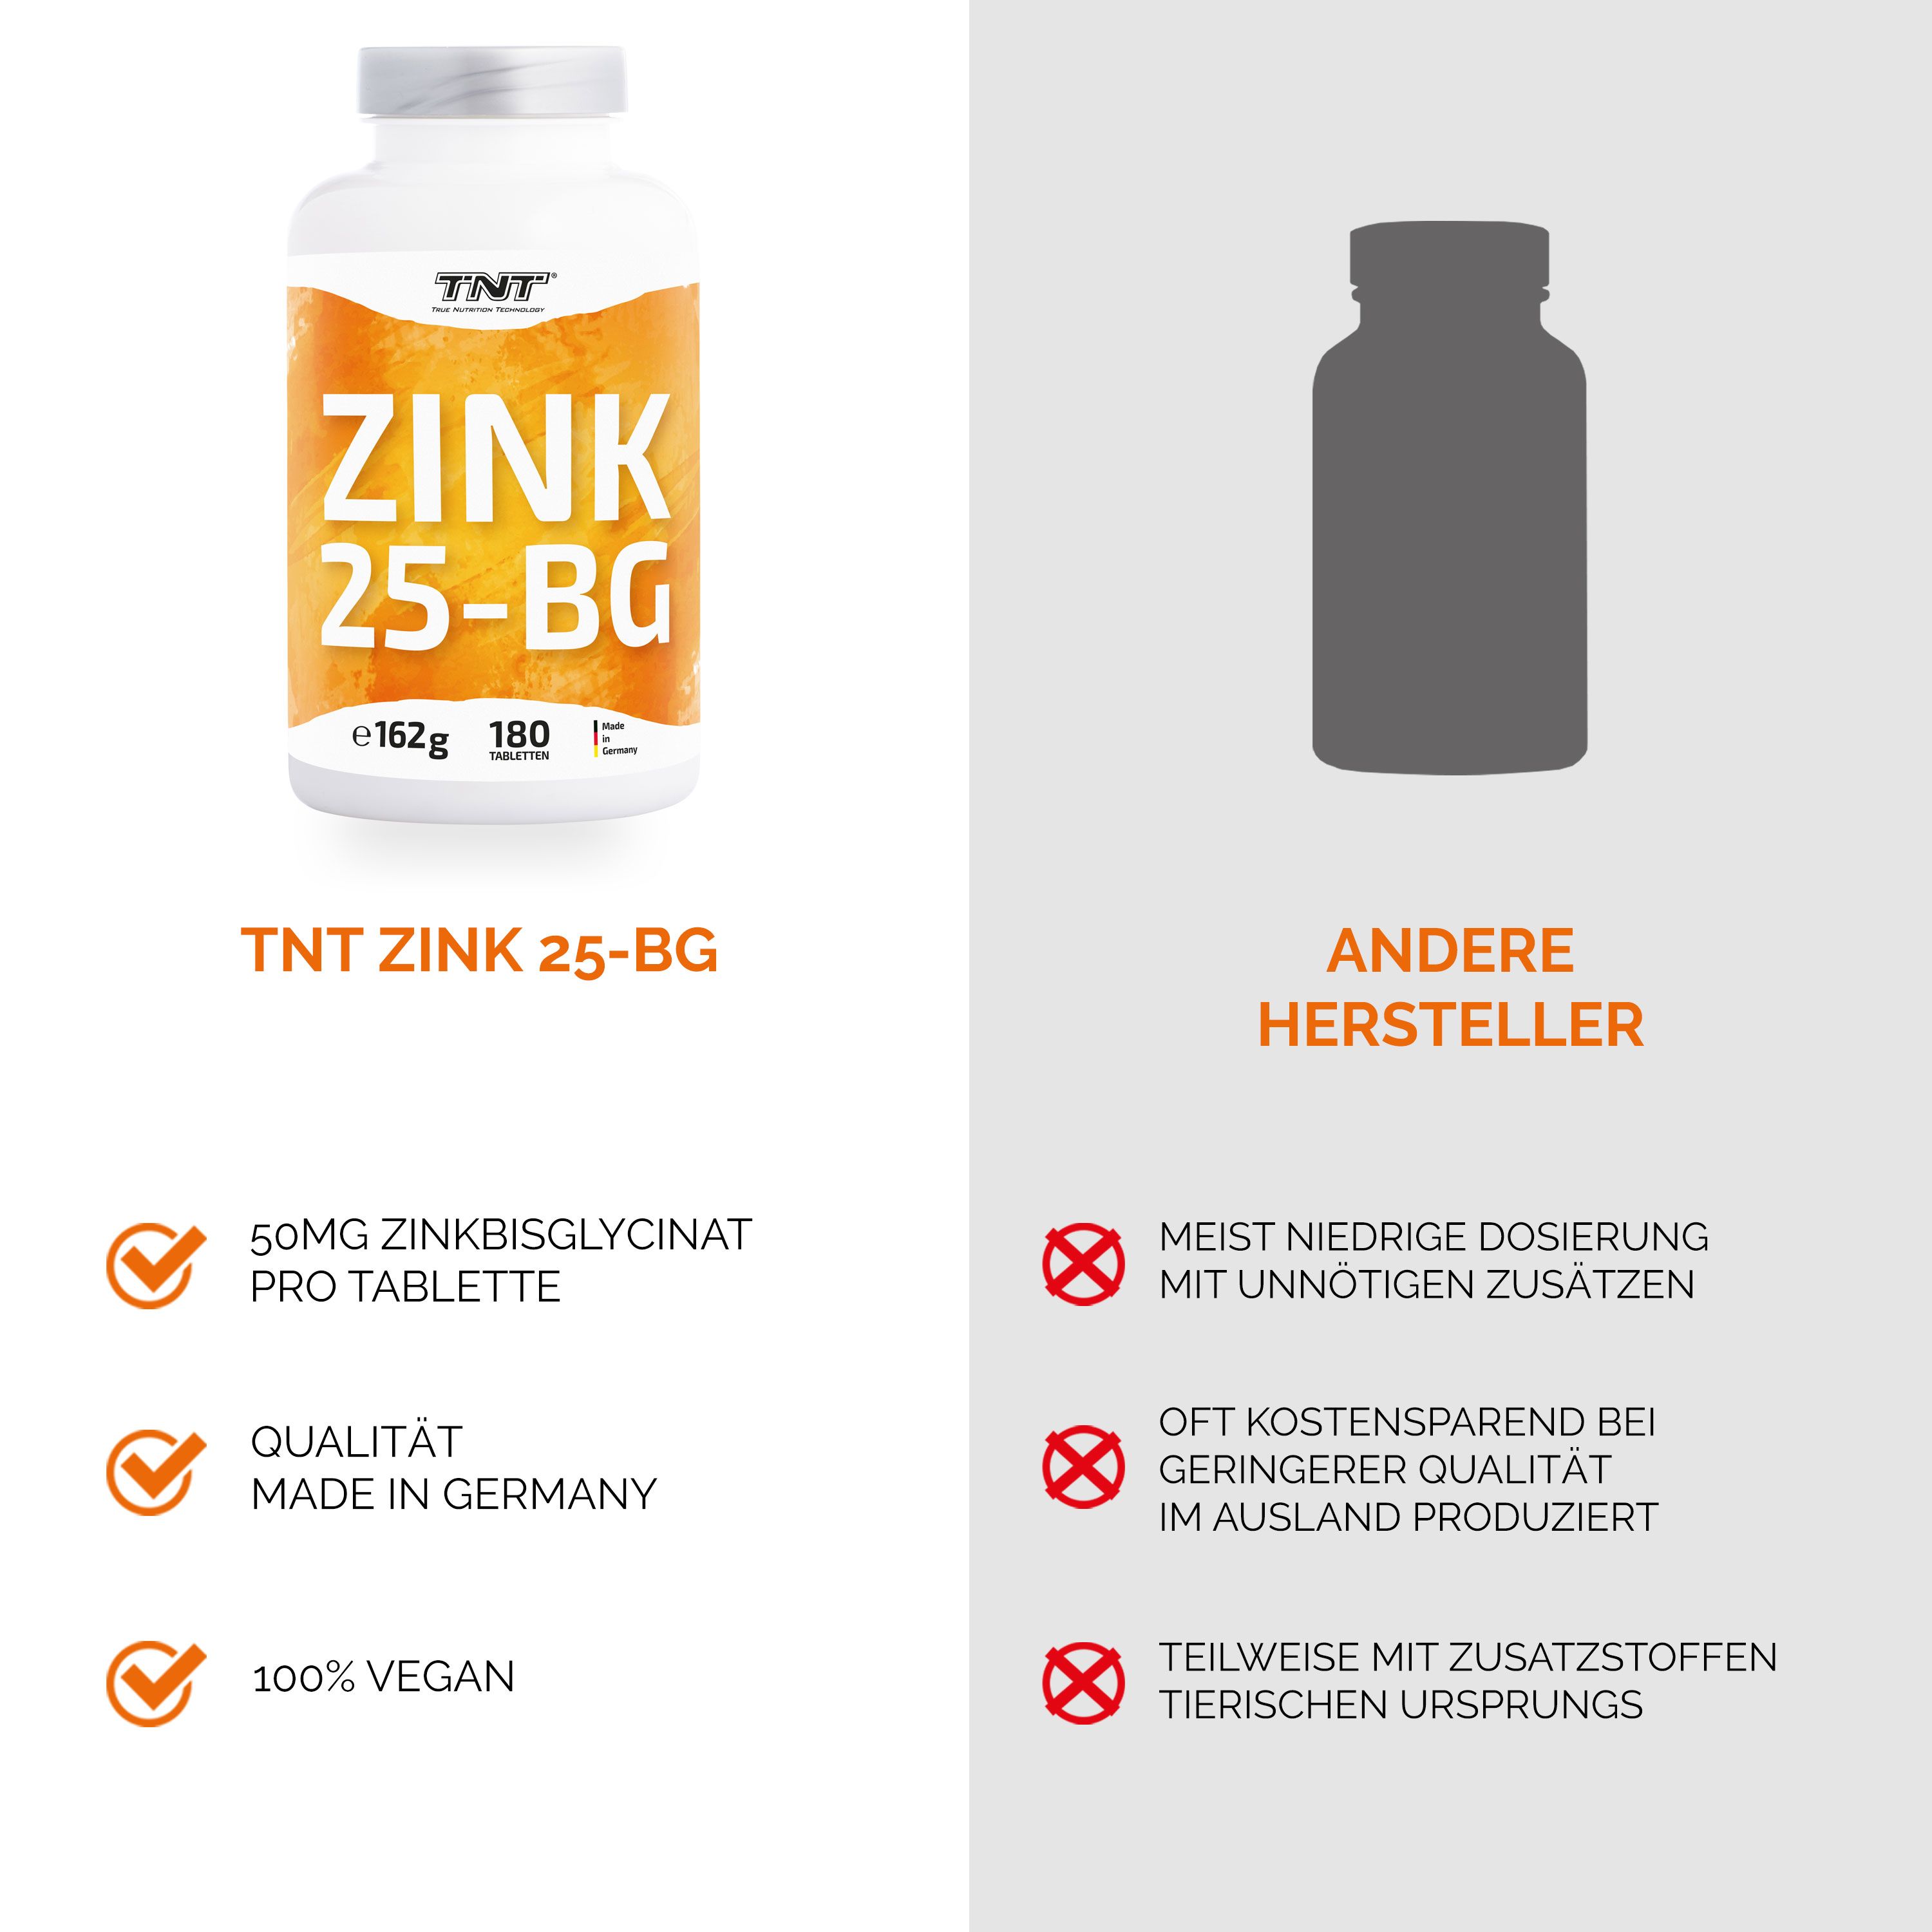 TNT Zink 25-BG Zinkbisglycinat - höchste Bioverfügbarkeit